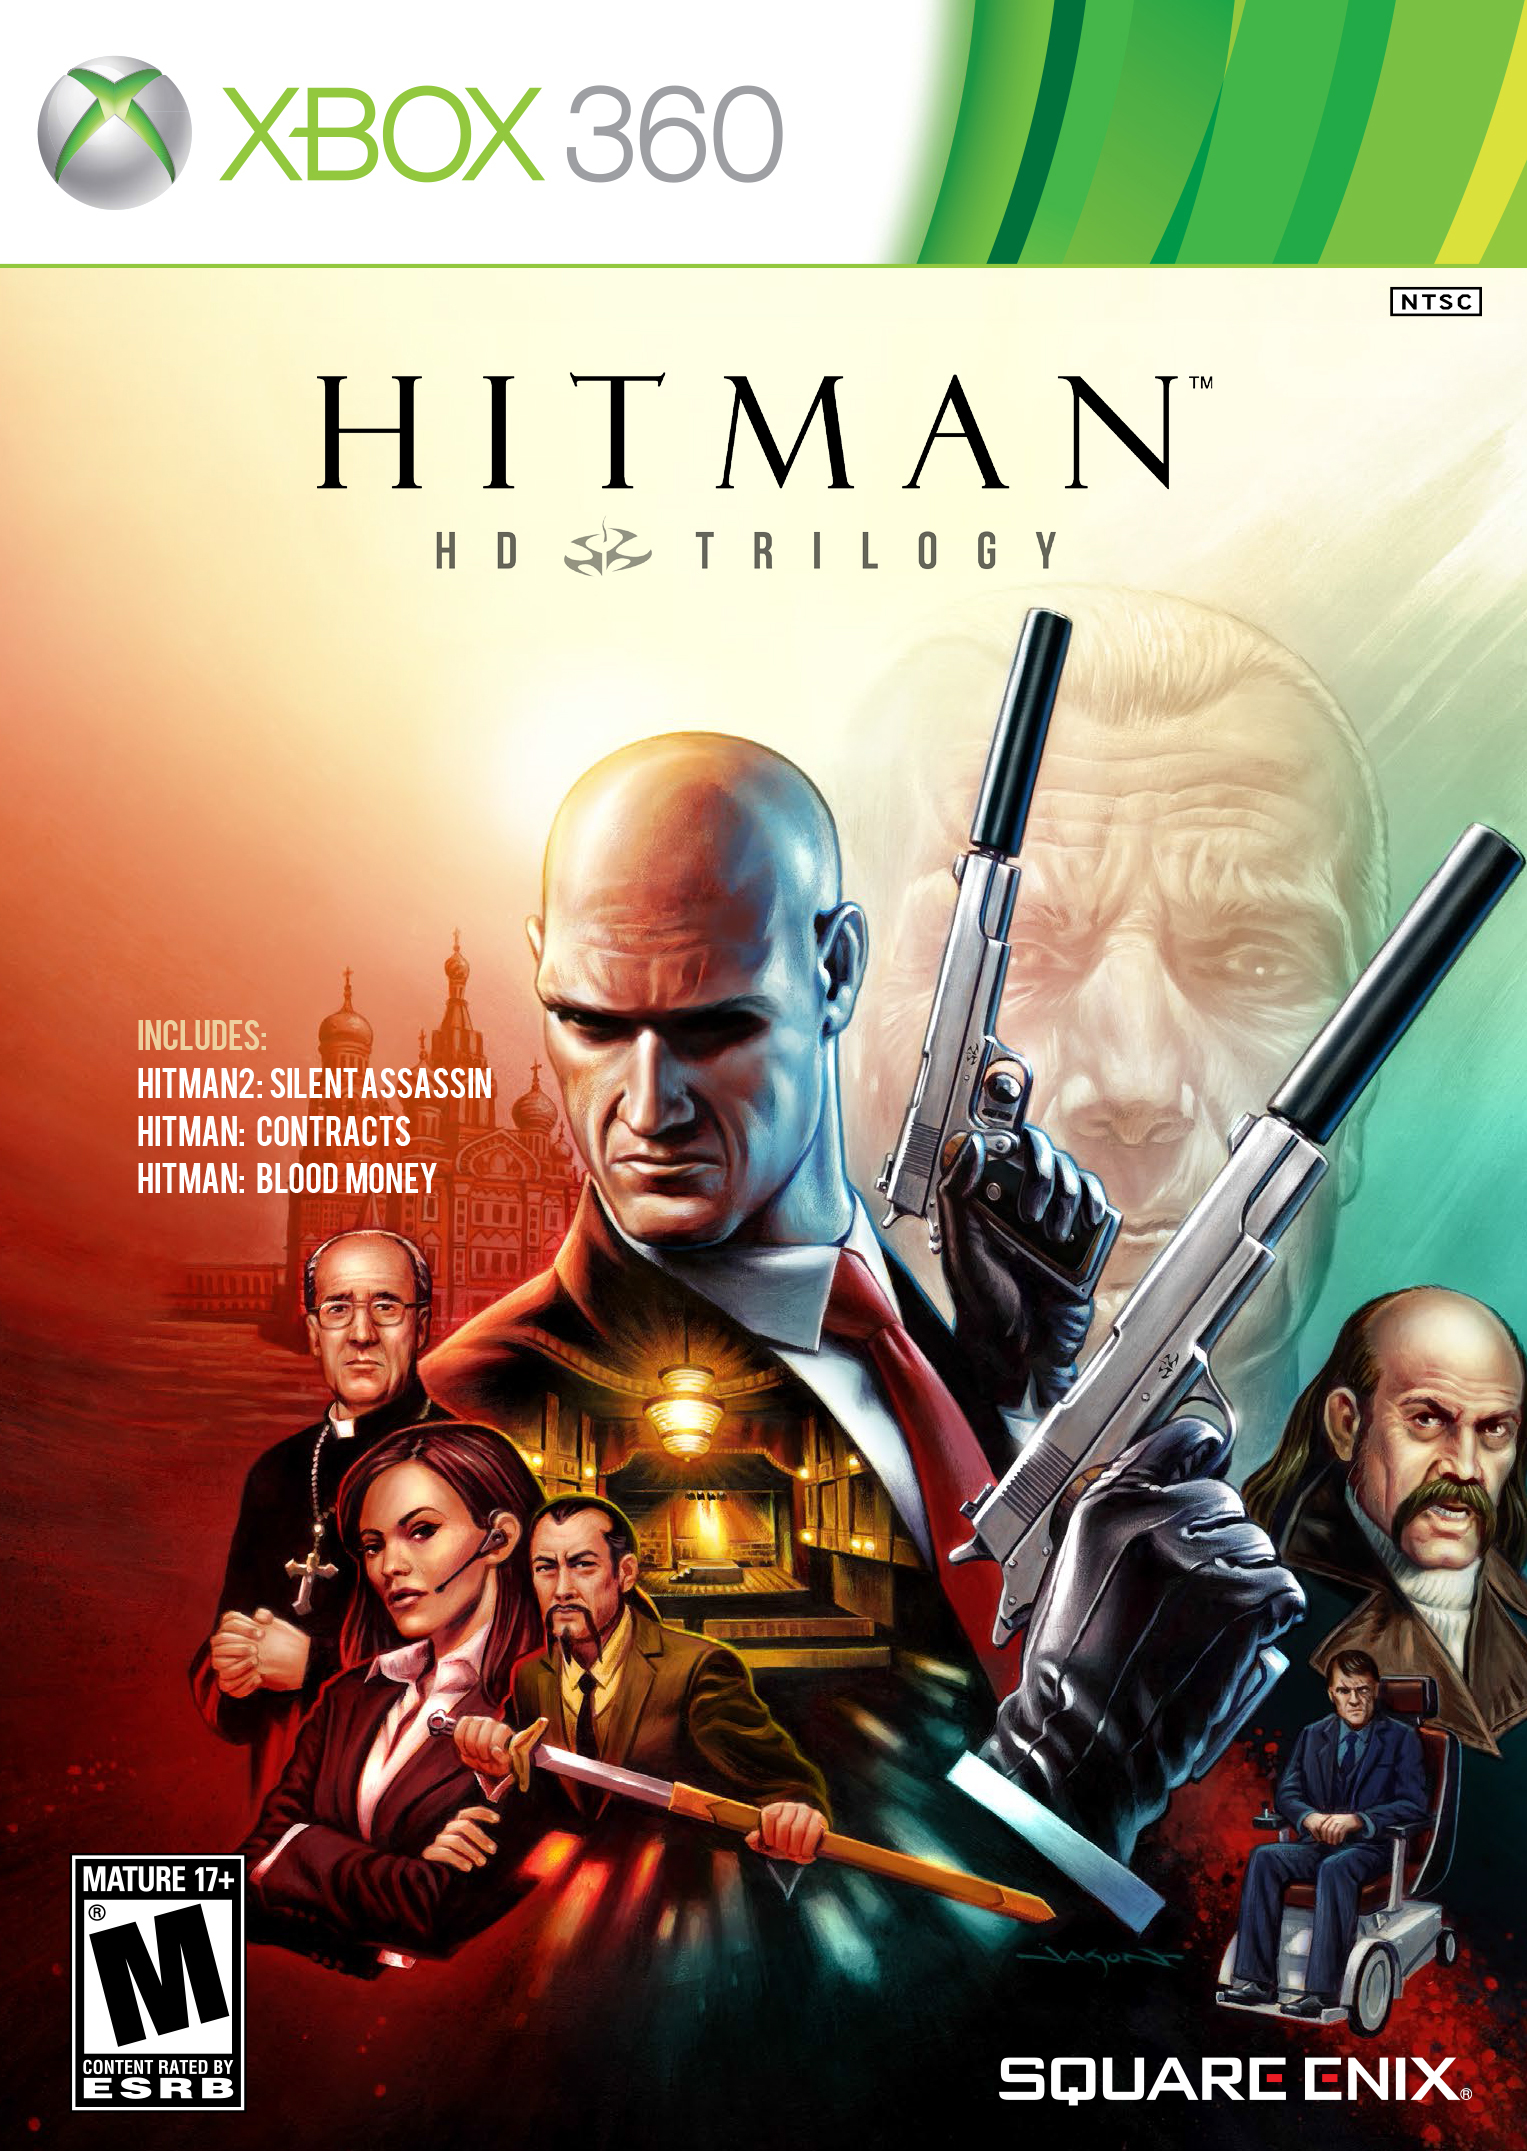 Blodig Billy ged tæppe Hitman HD Trilogy | Hitman Wiki | Fandom